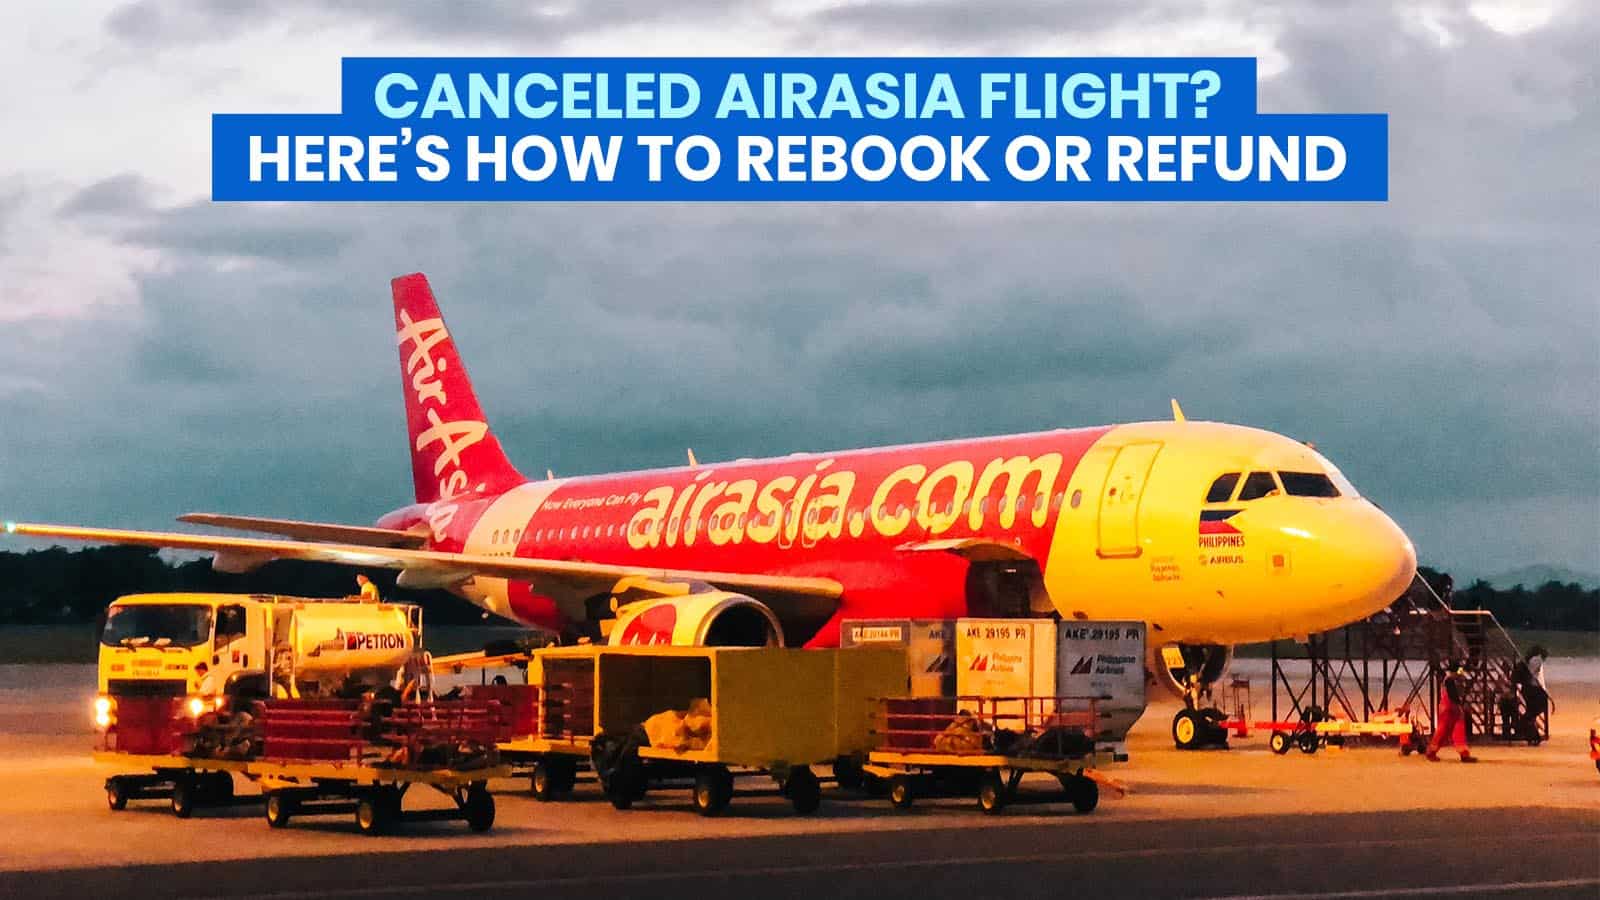 取消了由于Covid-19而取消的亚航航班？这是重新预订或退款的方法！